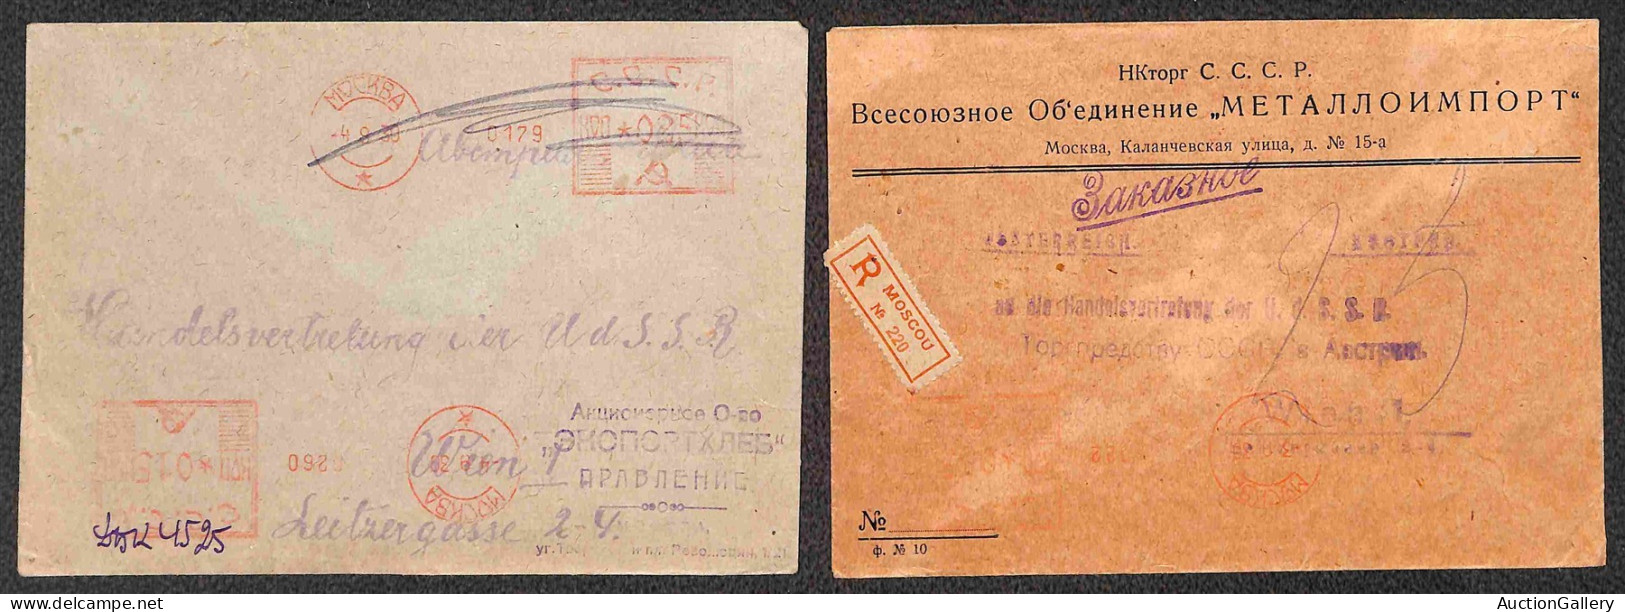 Oltremare - Russia - 1928/1936 - Tredici buste con affrancature meccaniche del periodo - sette per l'estero (Essen e Vie